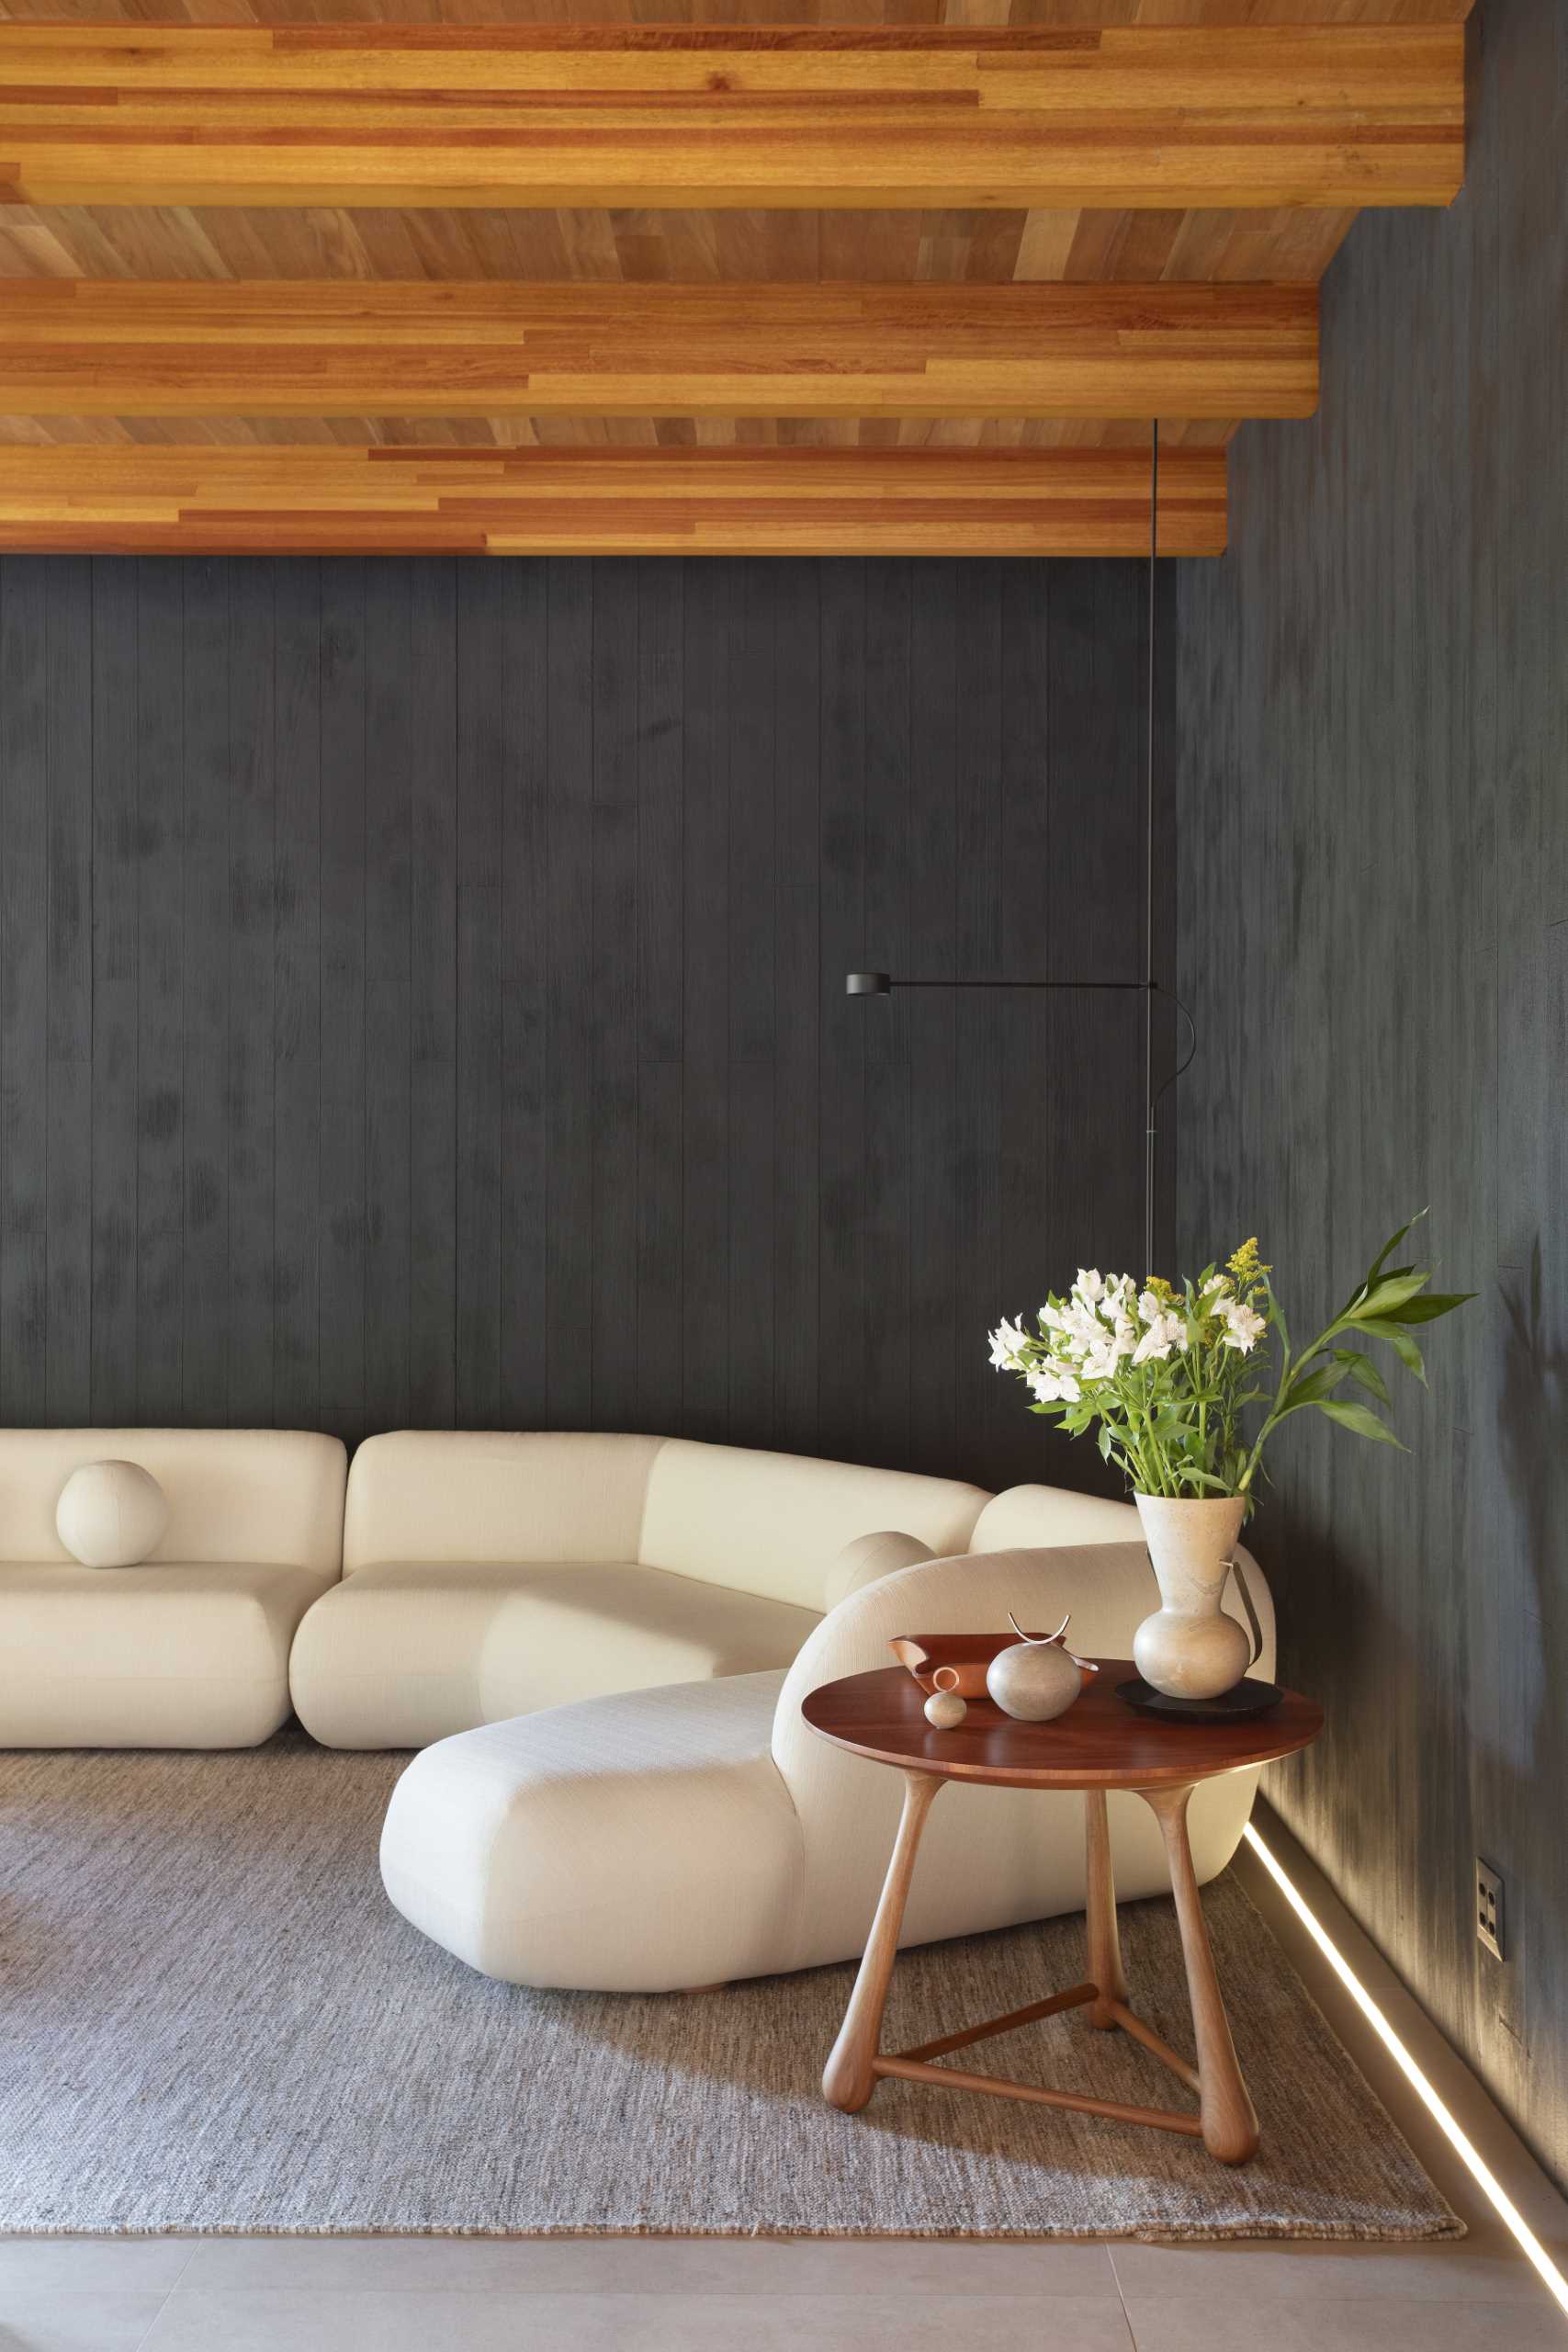 În această cameră TV modernă, există un perete cu accent din lemn de culoare închisă, realizat din șipci din lemn de Muiracatiara, finisate cu un tratament Shou Sugi Ban.